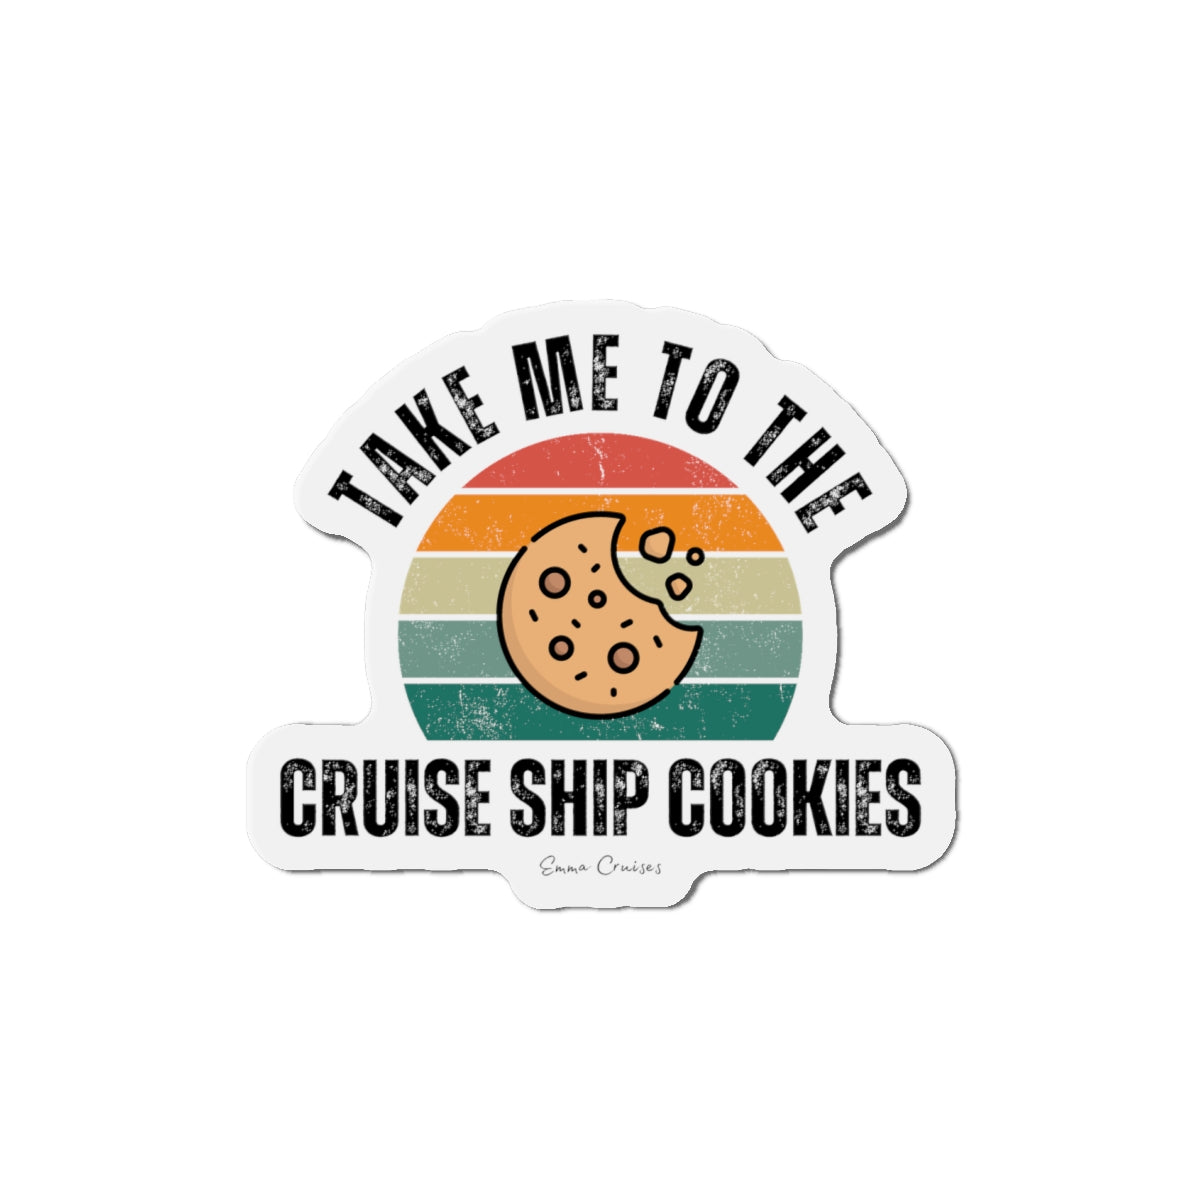 Bring mich zu den Kreuzfahrtschiff-Cookies – Magnet